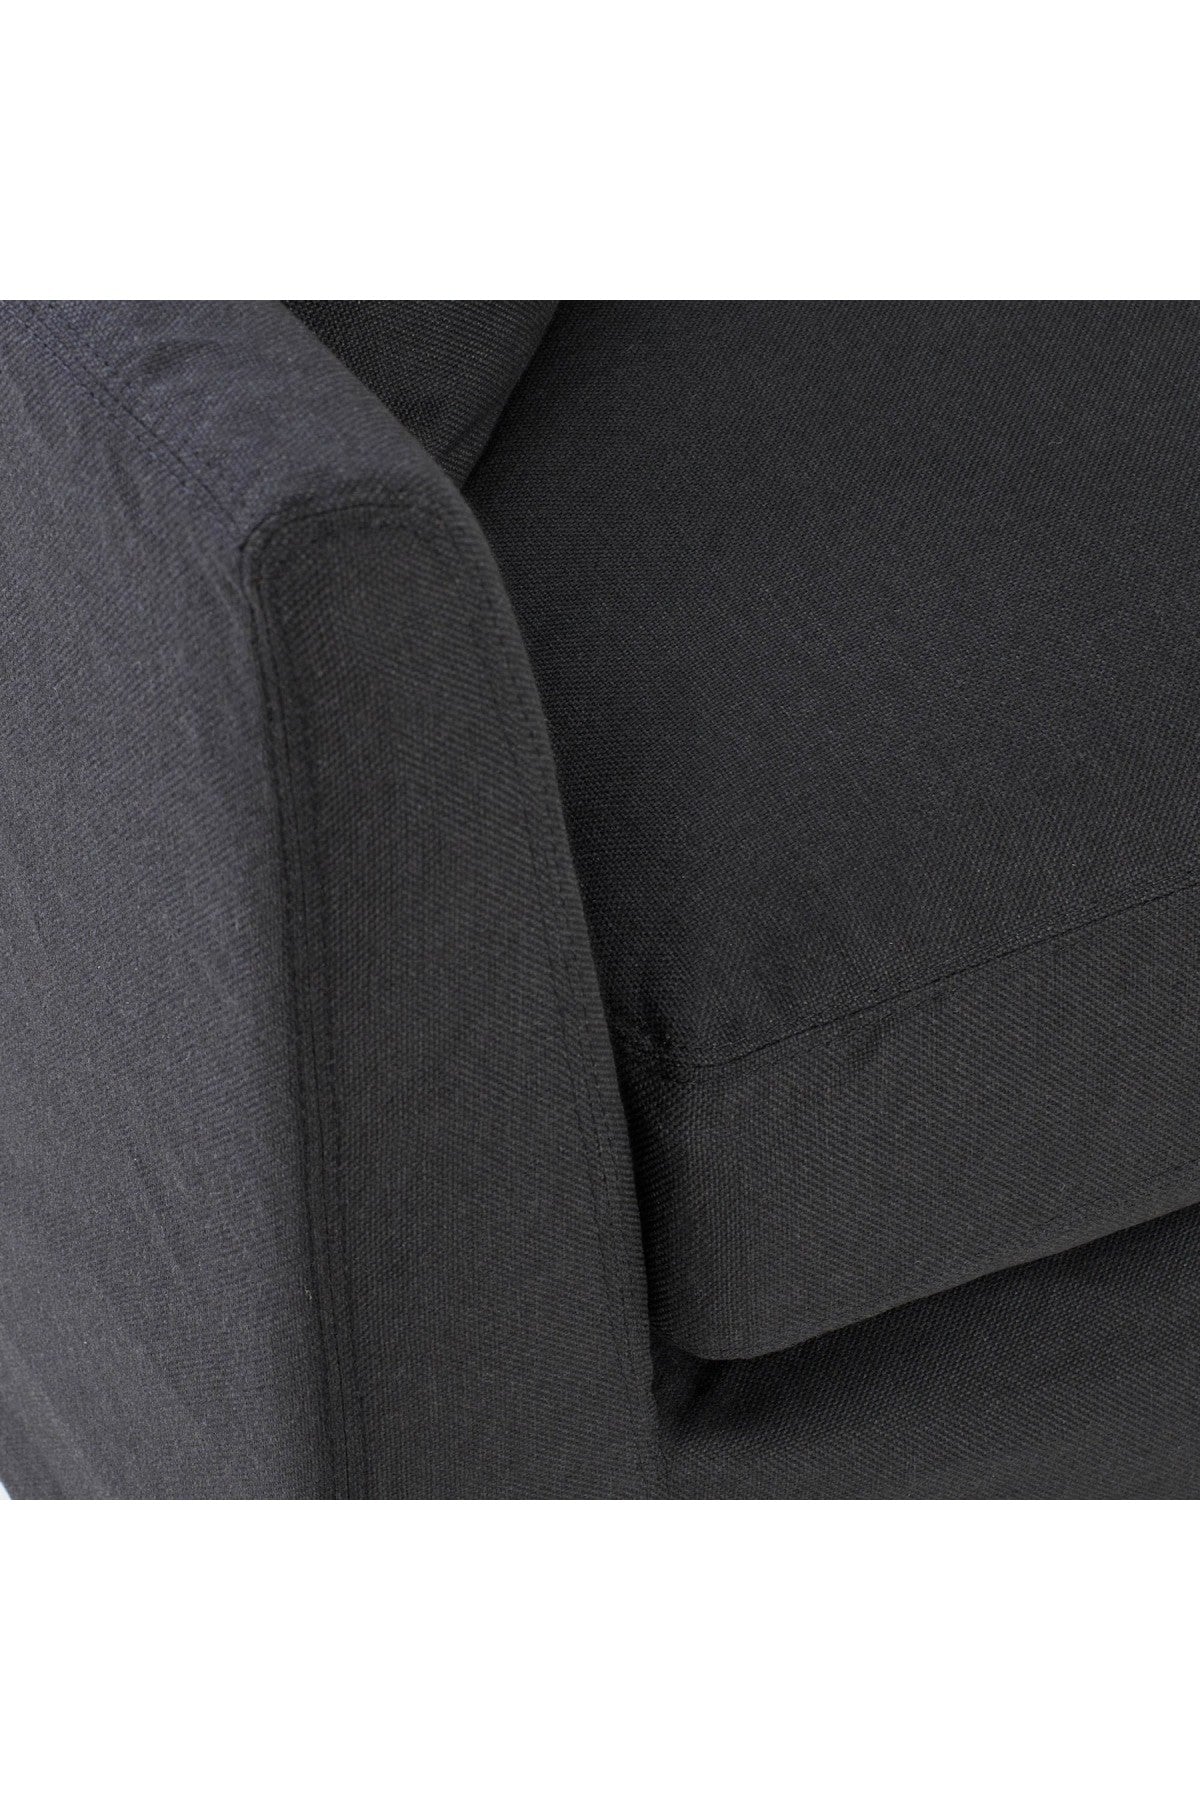 Heston Slipcover Sofa